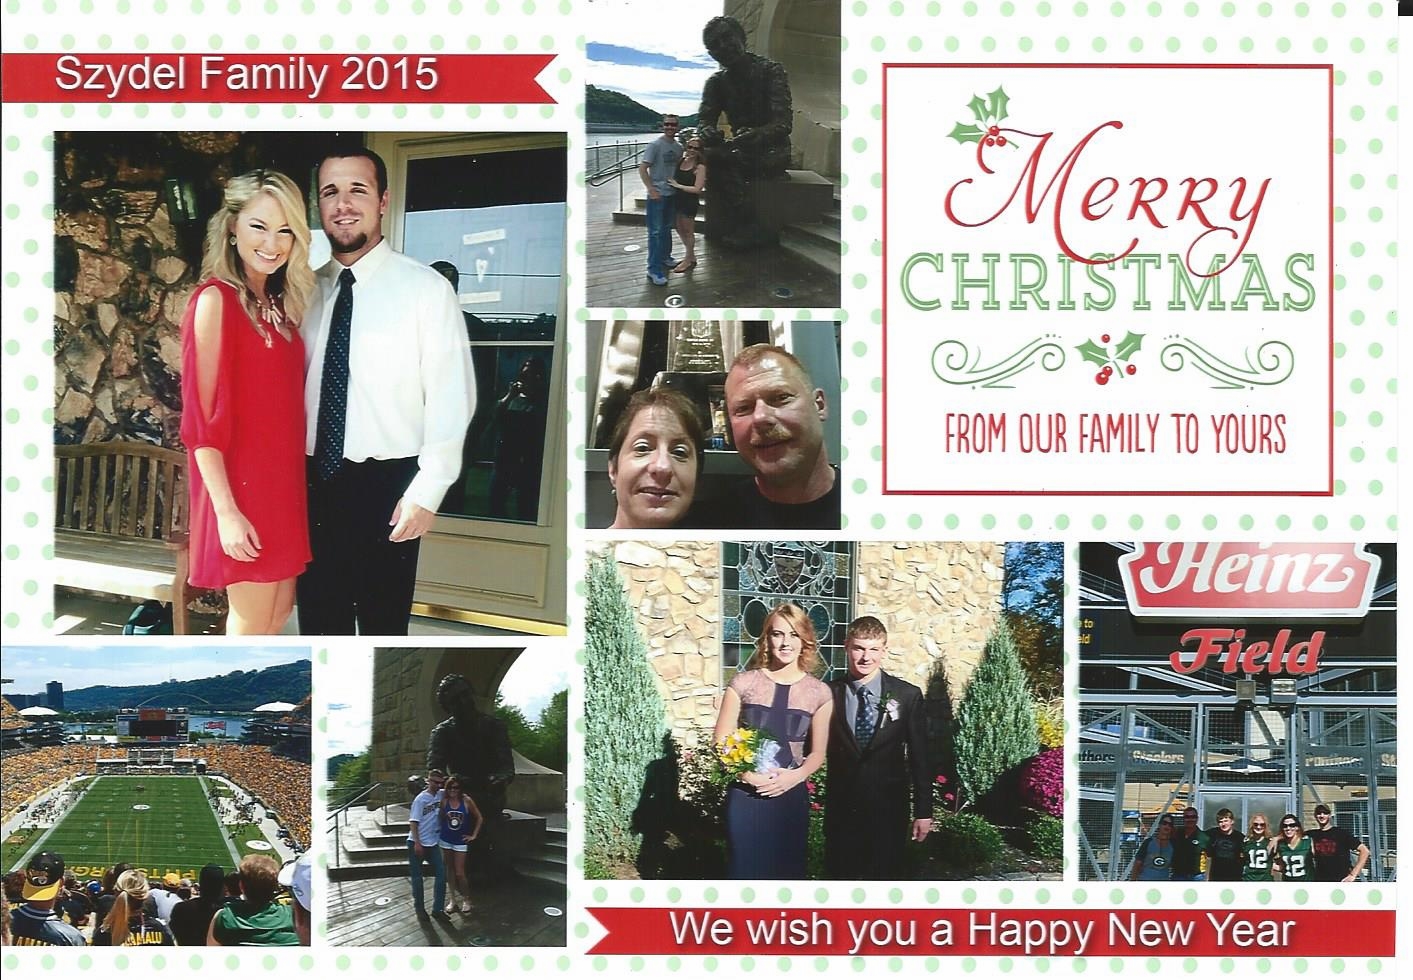 John and Lyndel Family, December 2015